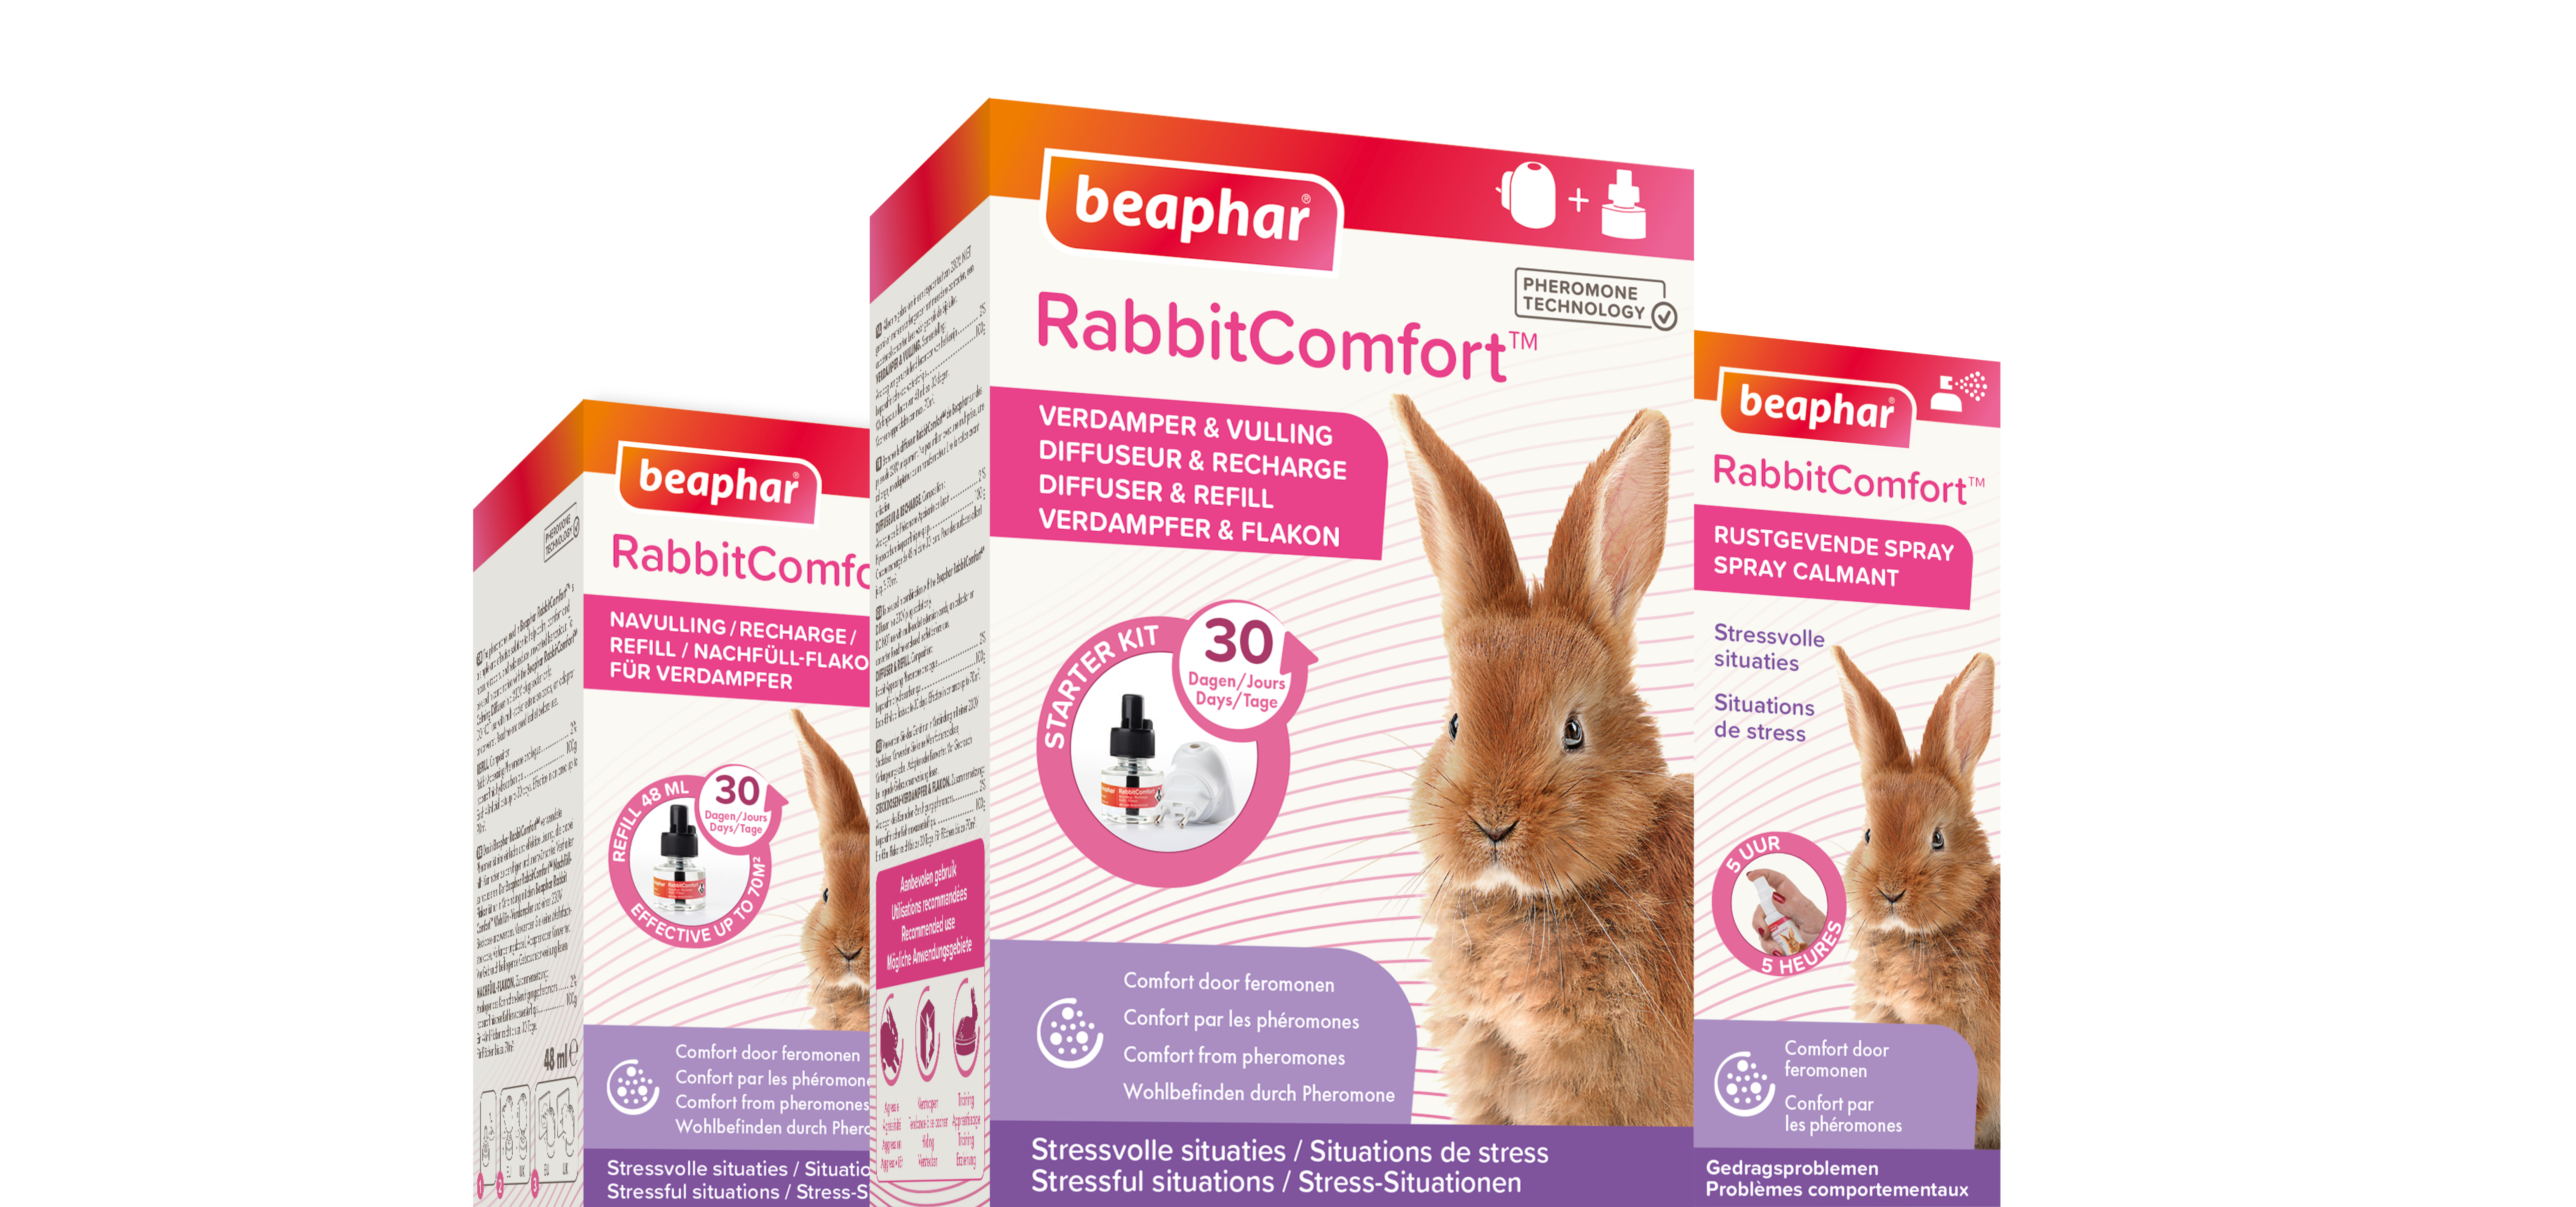 rabbitcomfort